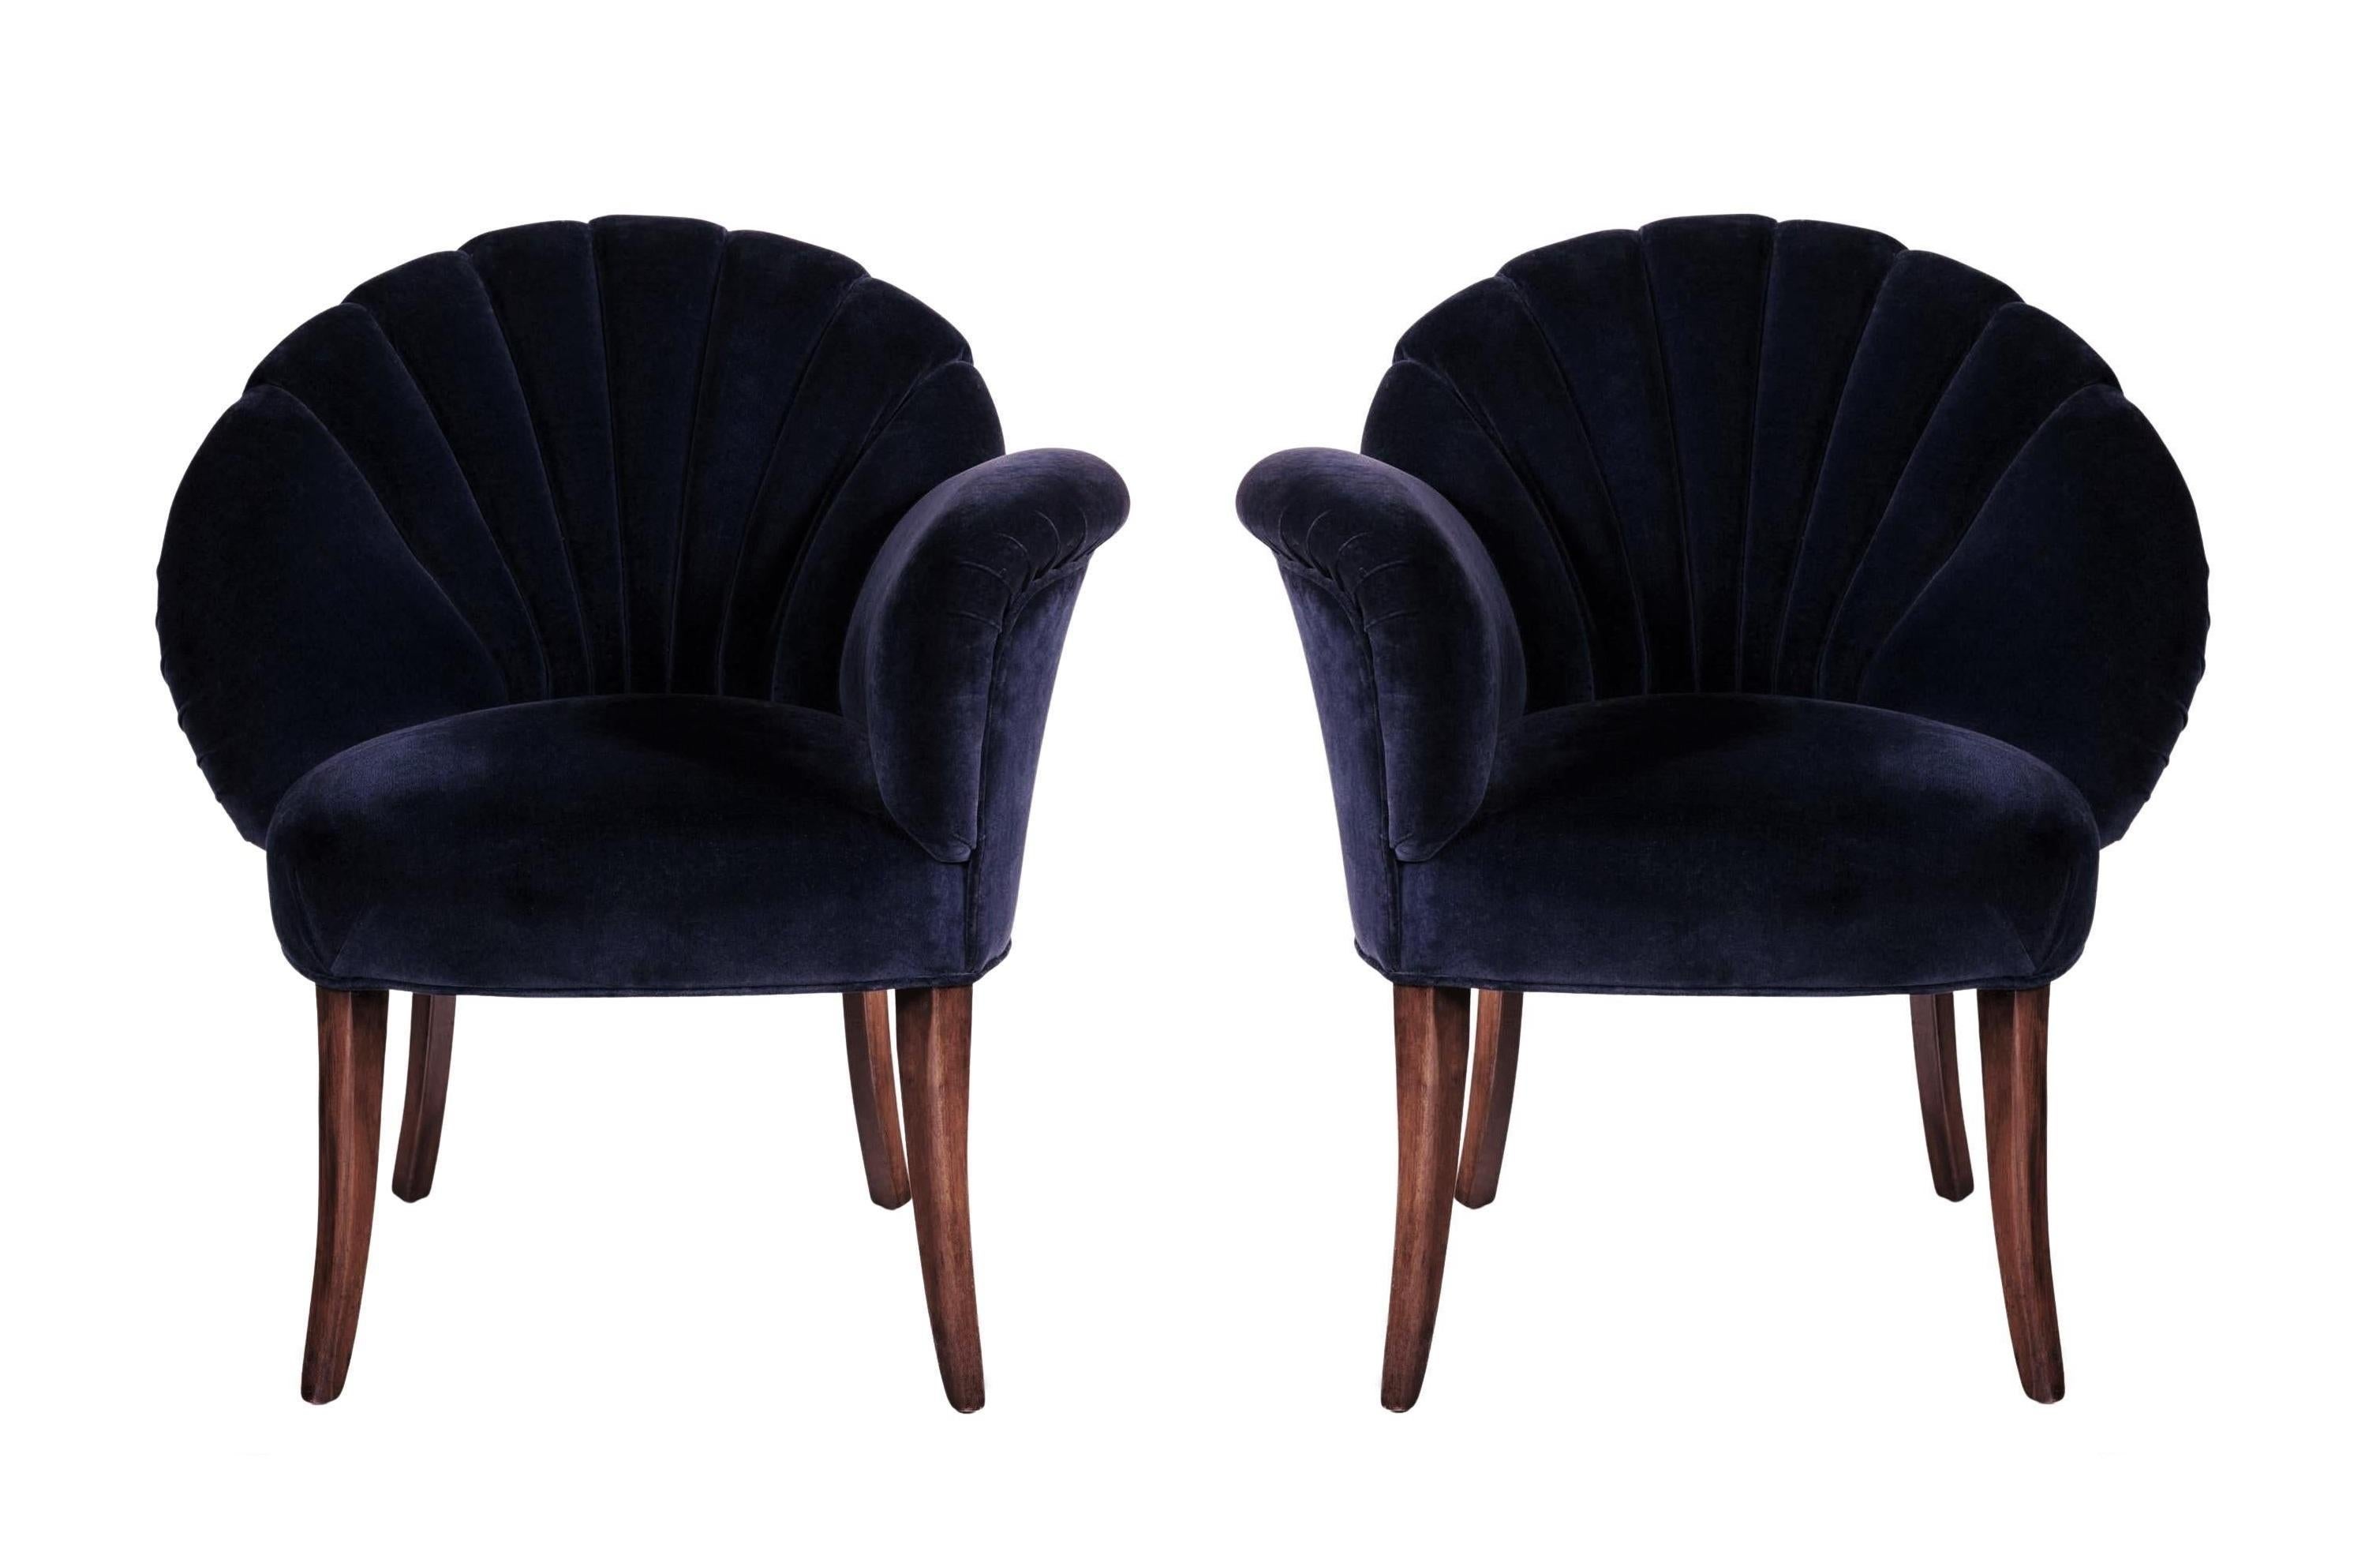 Un spectacle à voir ! Ces superbes chaises asymétriques illustrent le glamour de l'ère hollywoodienne. Les formes épurées et rationalisées caractéristiques de l'Art déco encouragent l'œil à glisser le long du contour lisse et ininterrompu du design.